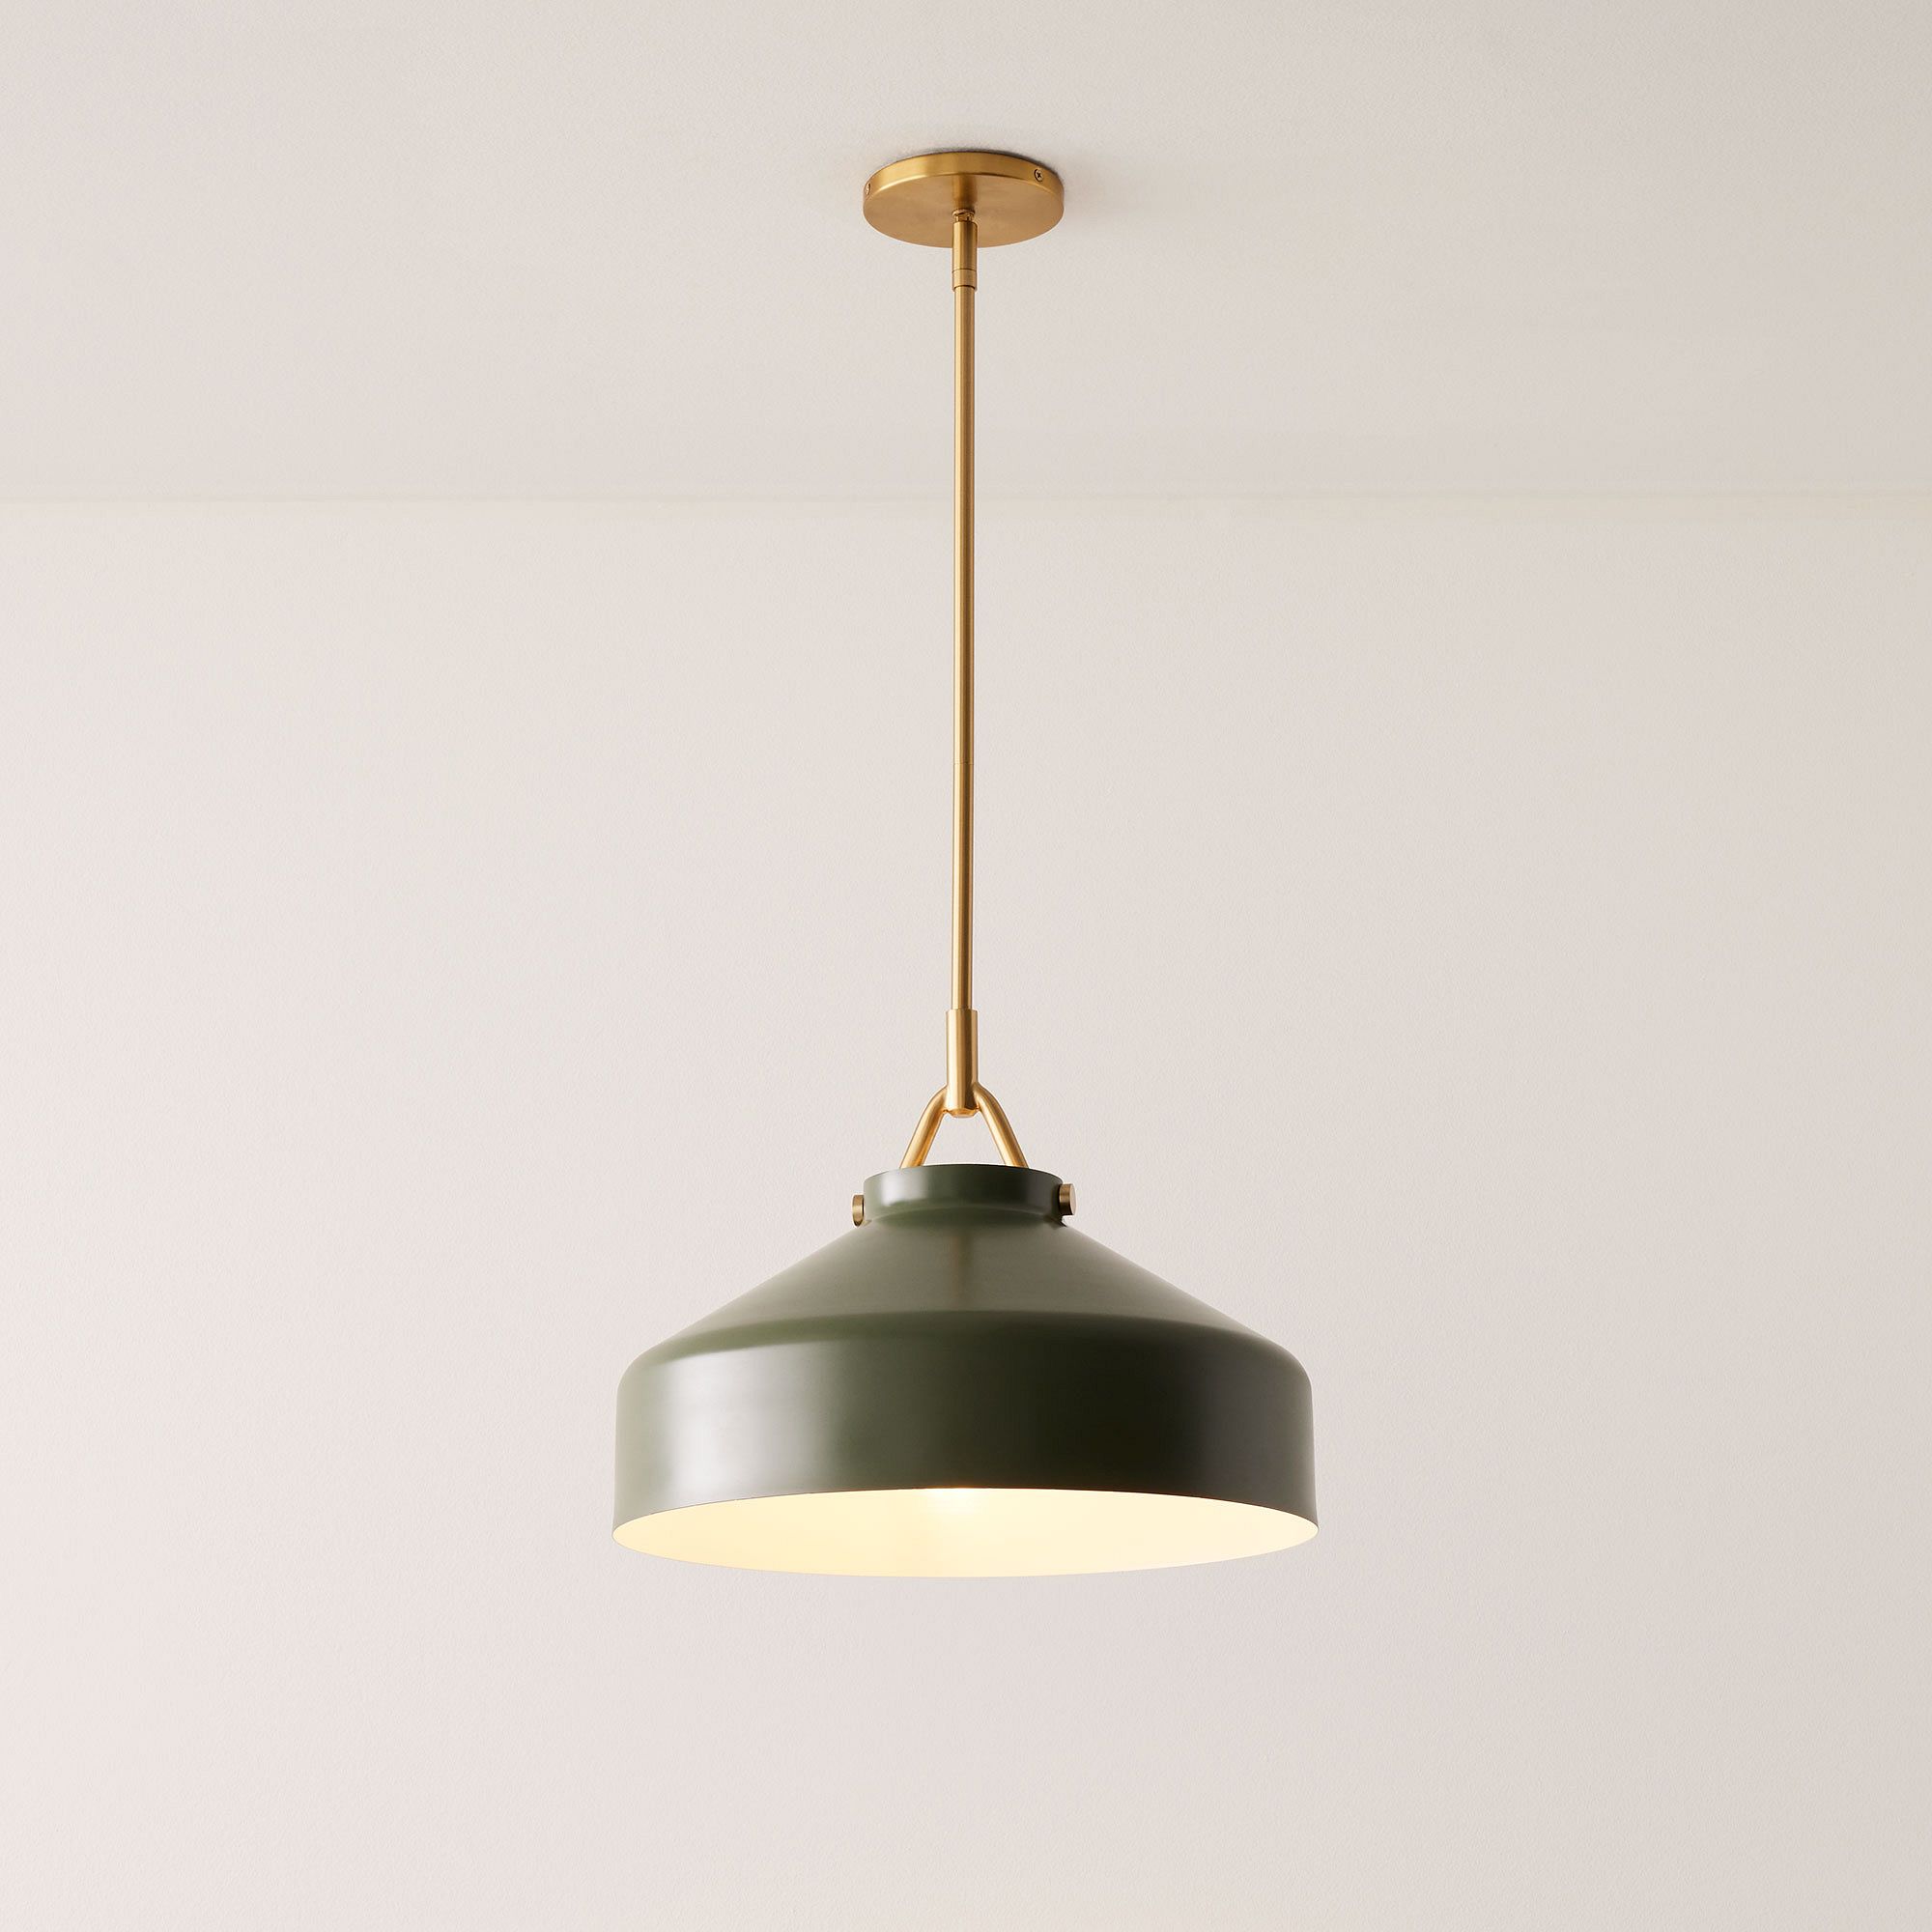 VersaGlow Premium Metal Pendant Light - Elegant Multi-Functional Design with Premium Material for Dining Room